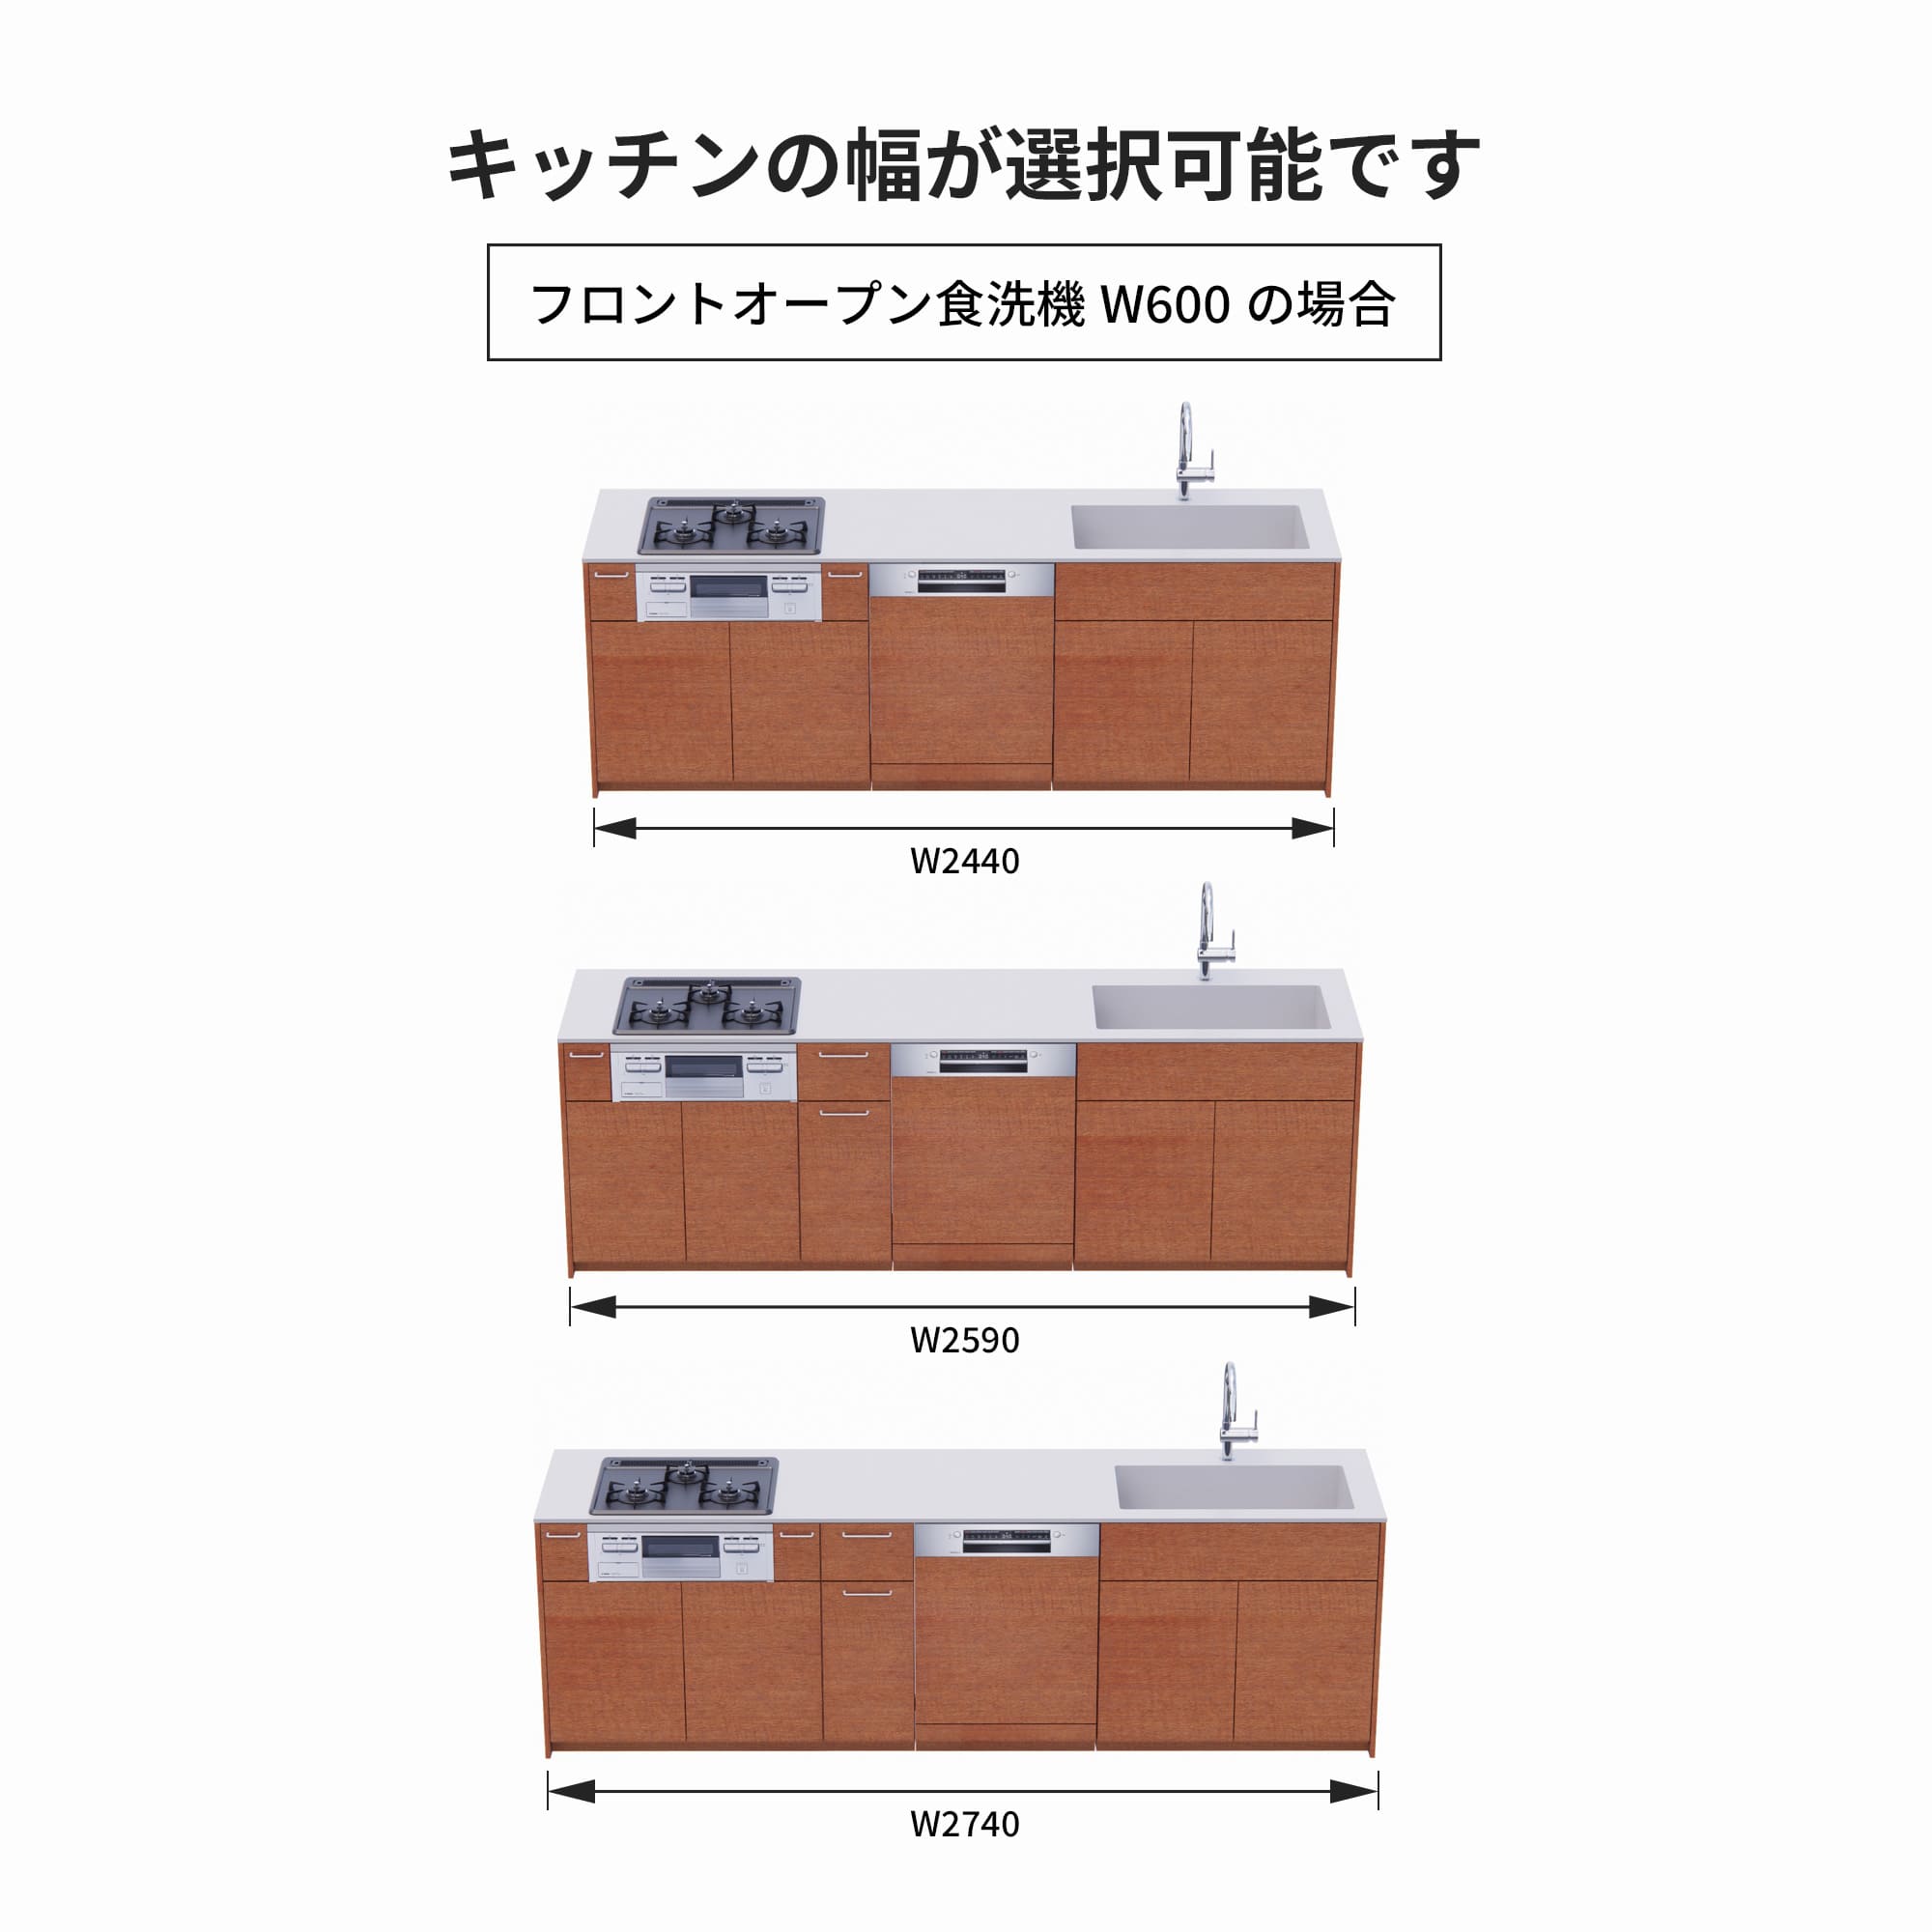 木製システムキッチン 壁付け型 W2440～2740・コンロあり / オーブンなし / 食洗機あり KB-KC022-26-G183 フロントオープン600の場合